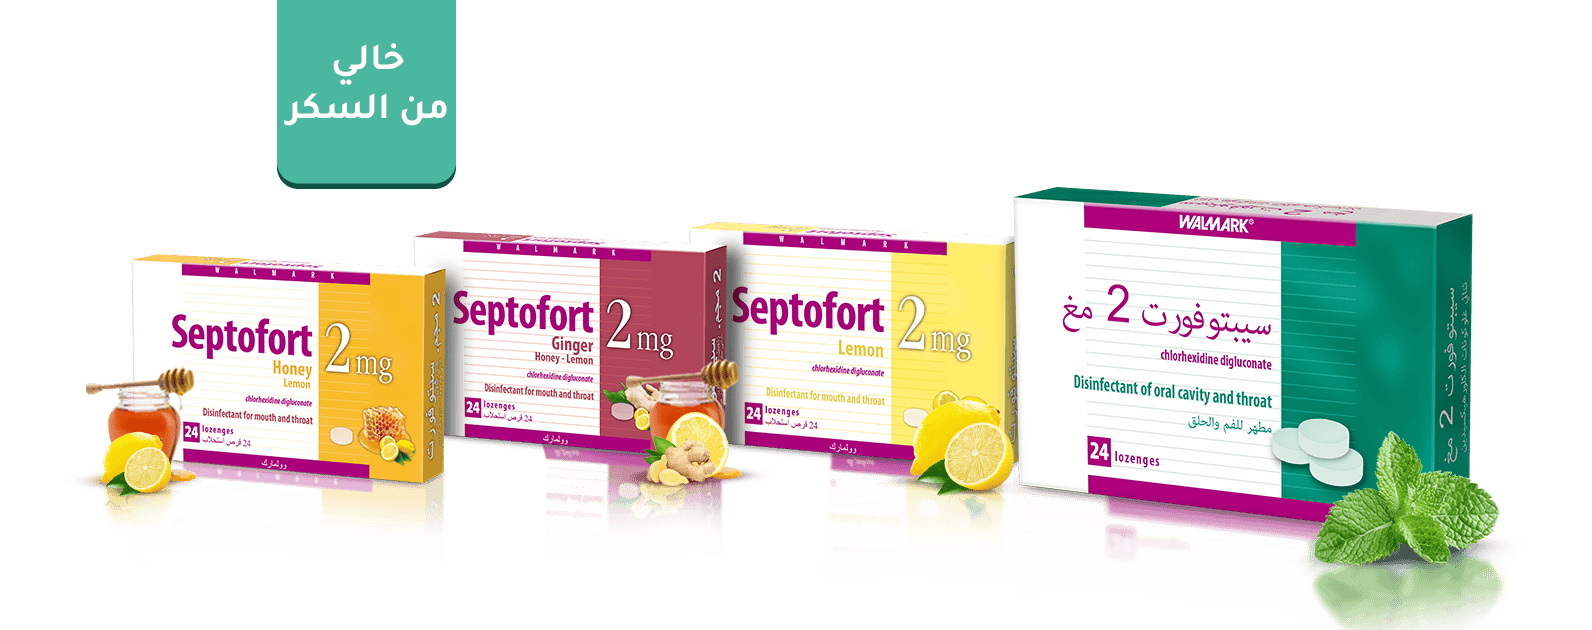 Septofort-banner-ar